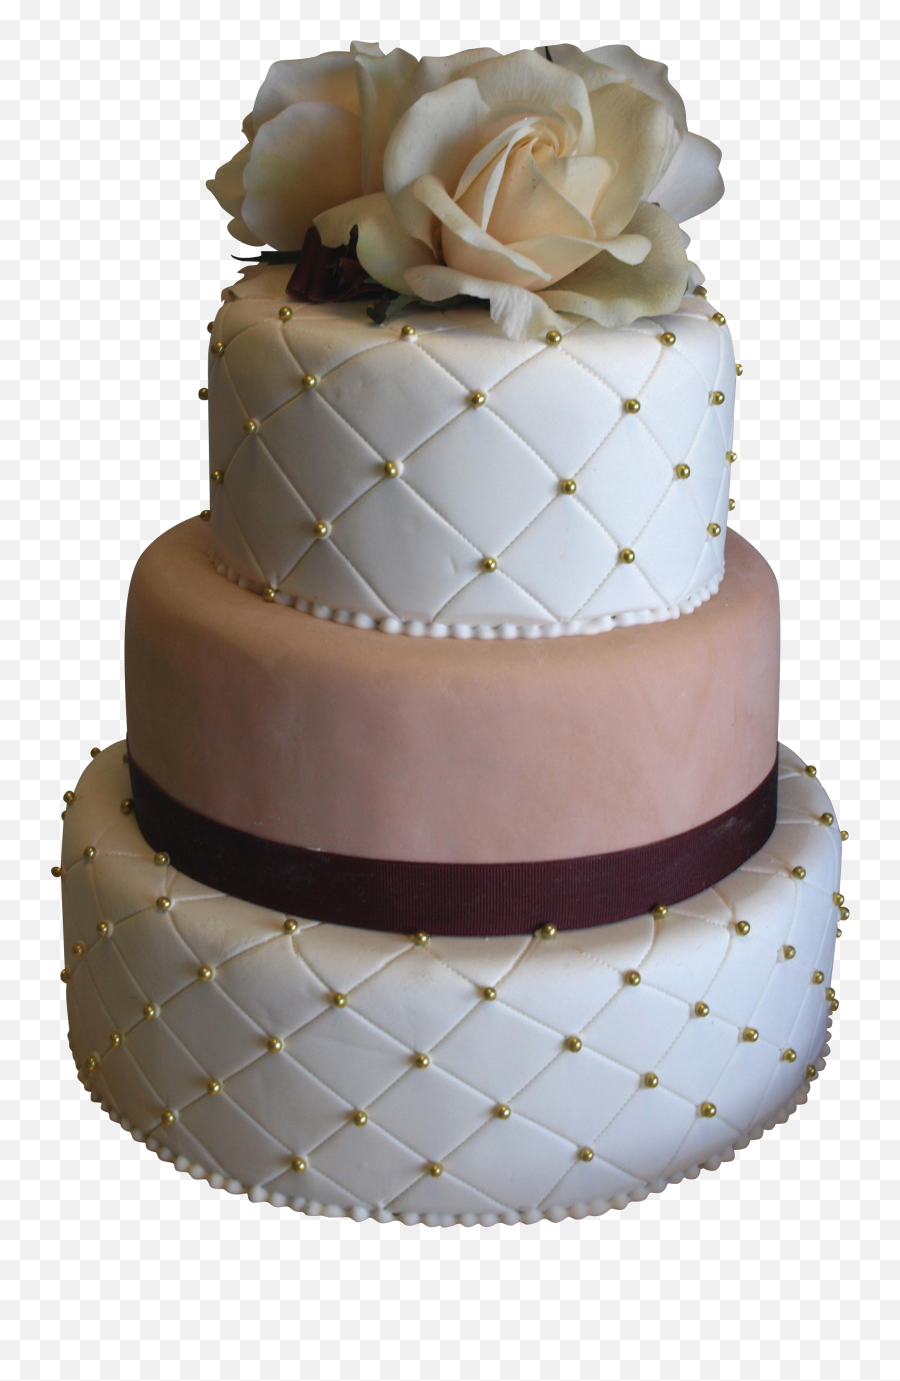 Decorative Wedding Cake Free Png Image - Cake Decorating,Wedding Cake Png